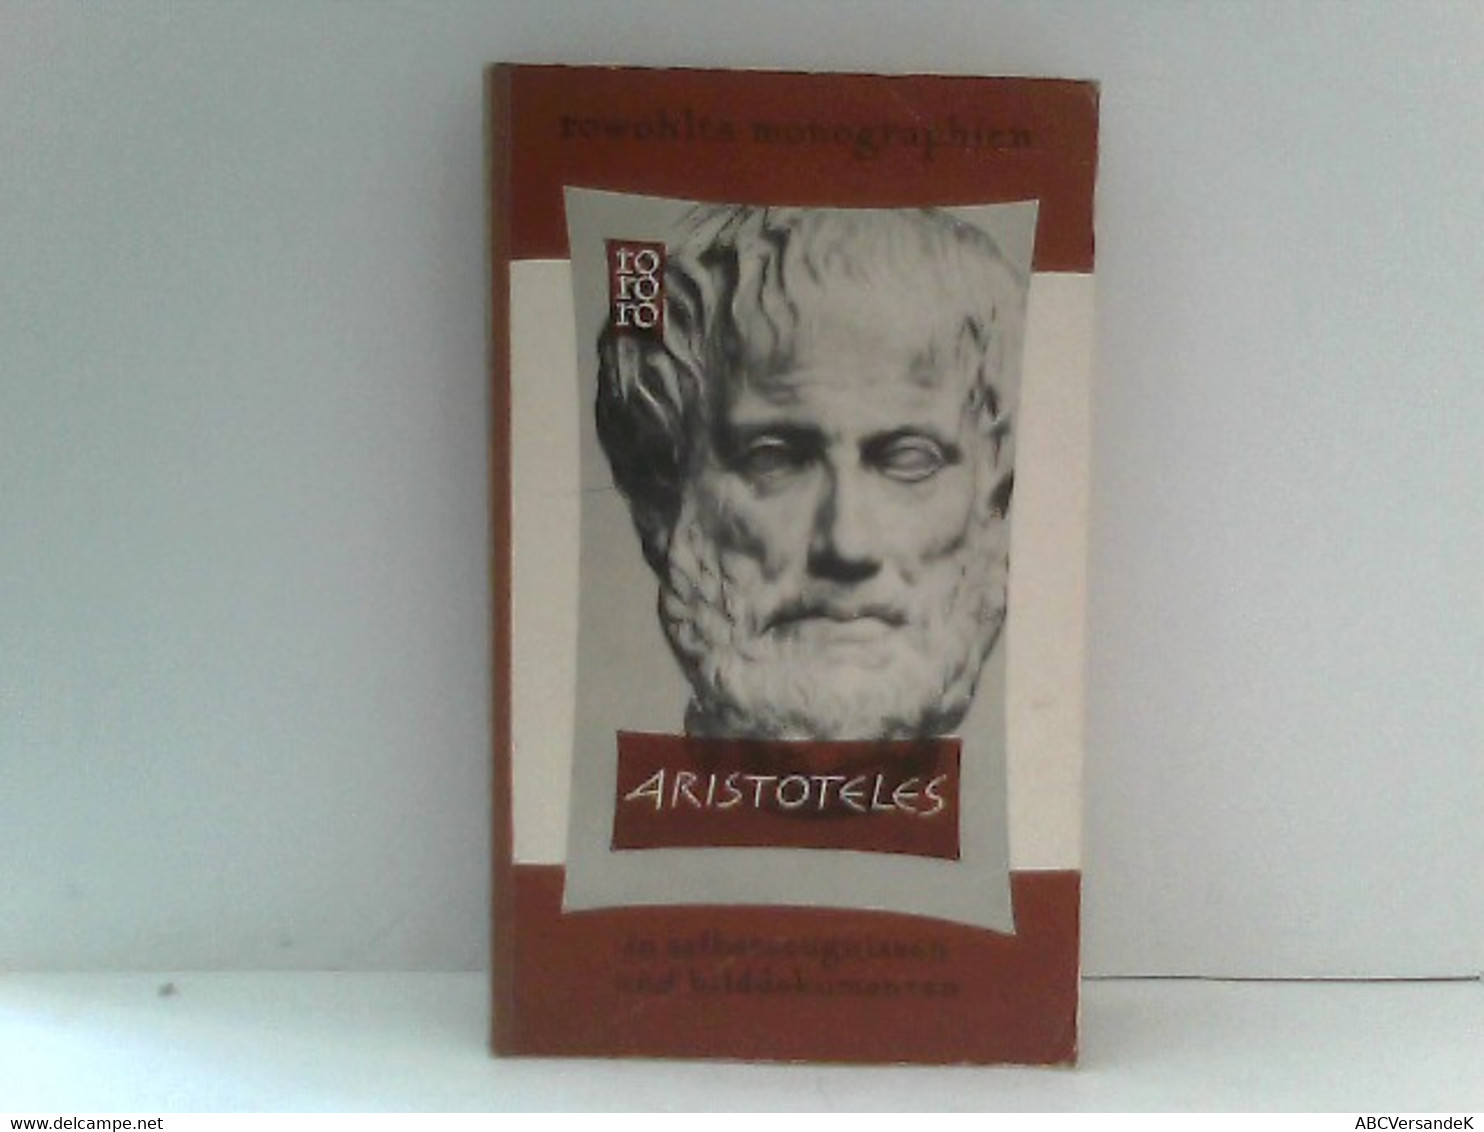 Aristoteles - Biographien & Memoiren